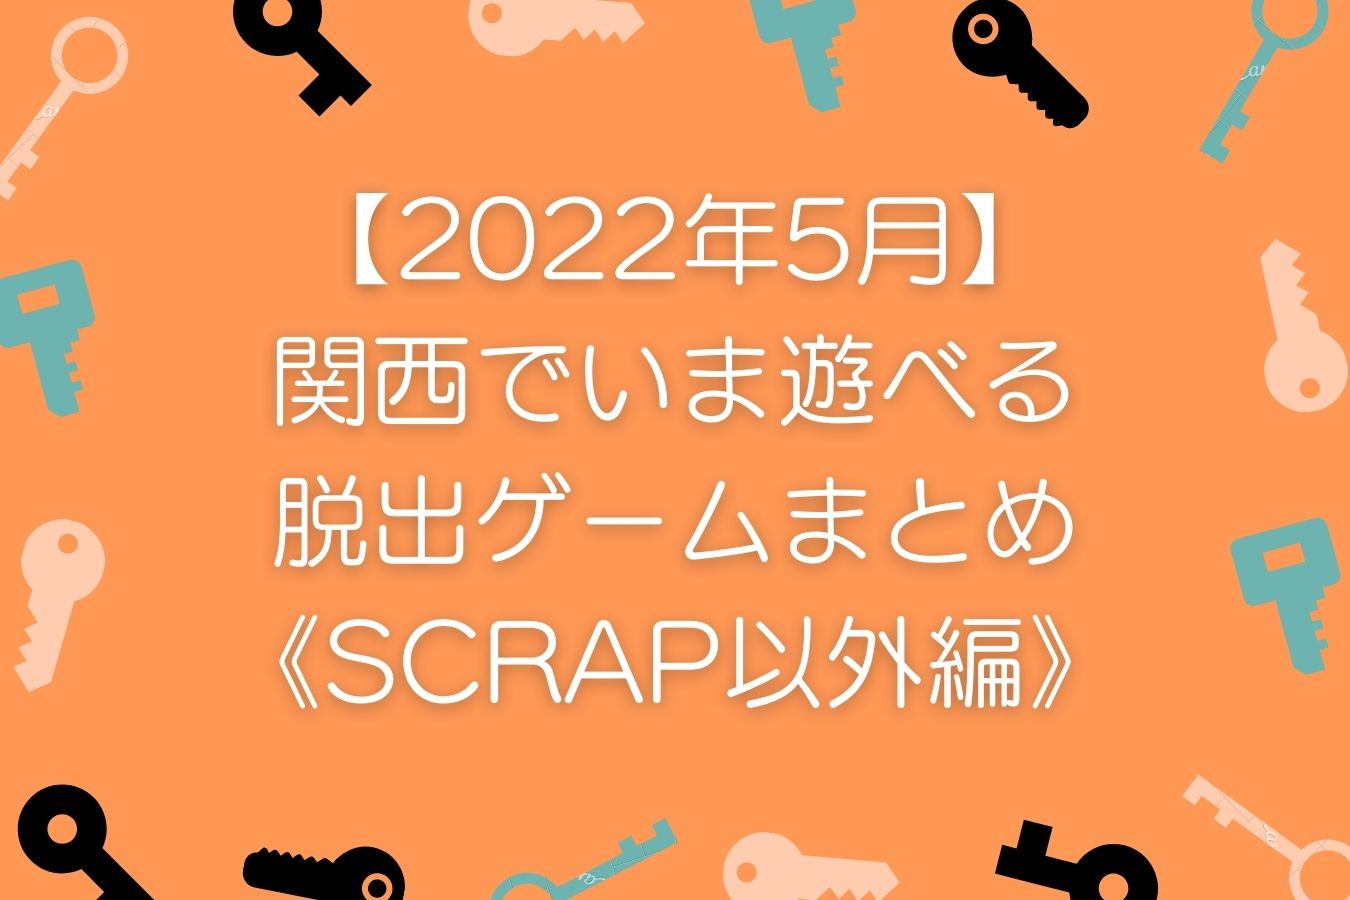 【2022年5月】-関西でいま遊べる-リアル脱出ゲームまとめ-《SCRAP以外編》